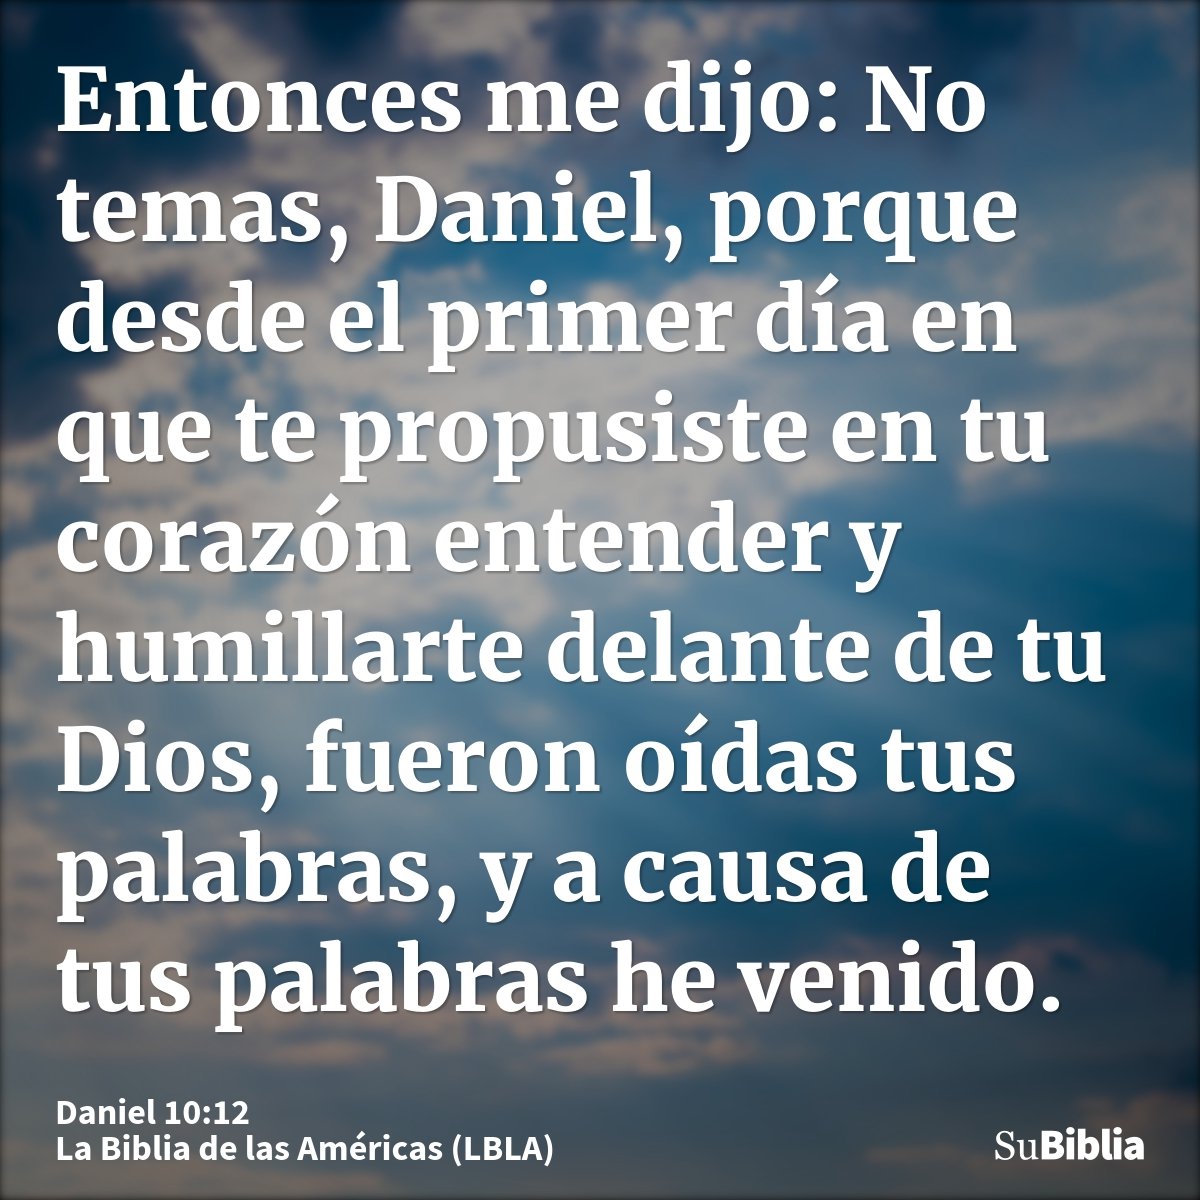 Entonces me dijo: No temas, Daniel, porque desde el primer día en que te propusiste en tu corazón entender y humillarte delante de tu Dios, fueron oídas tus pal...